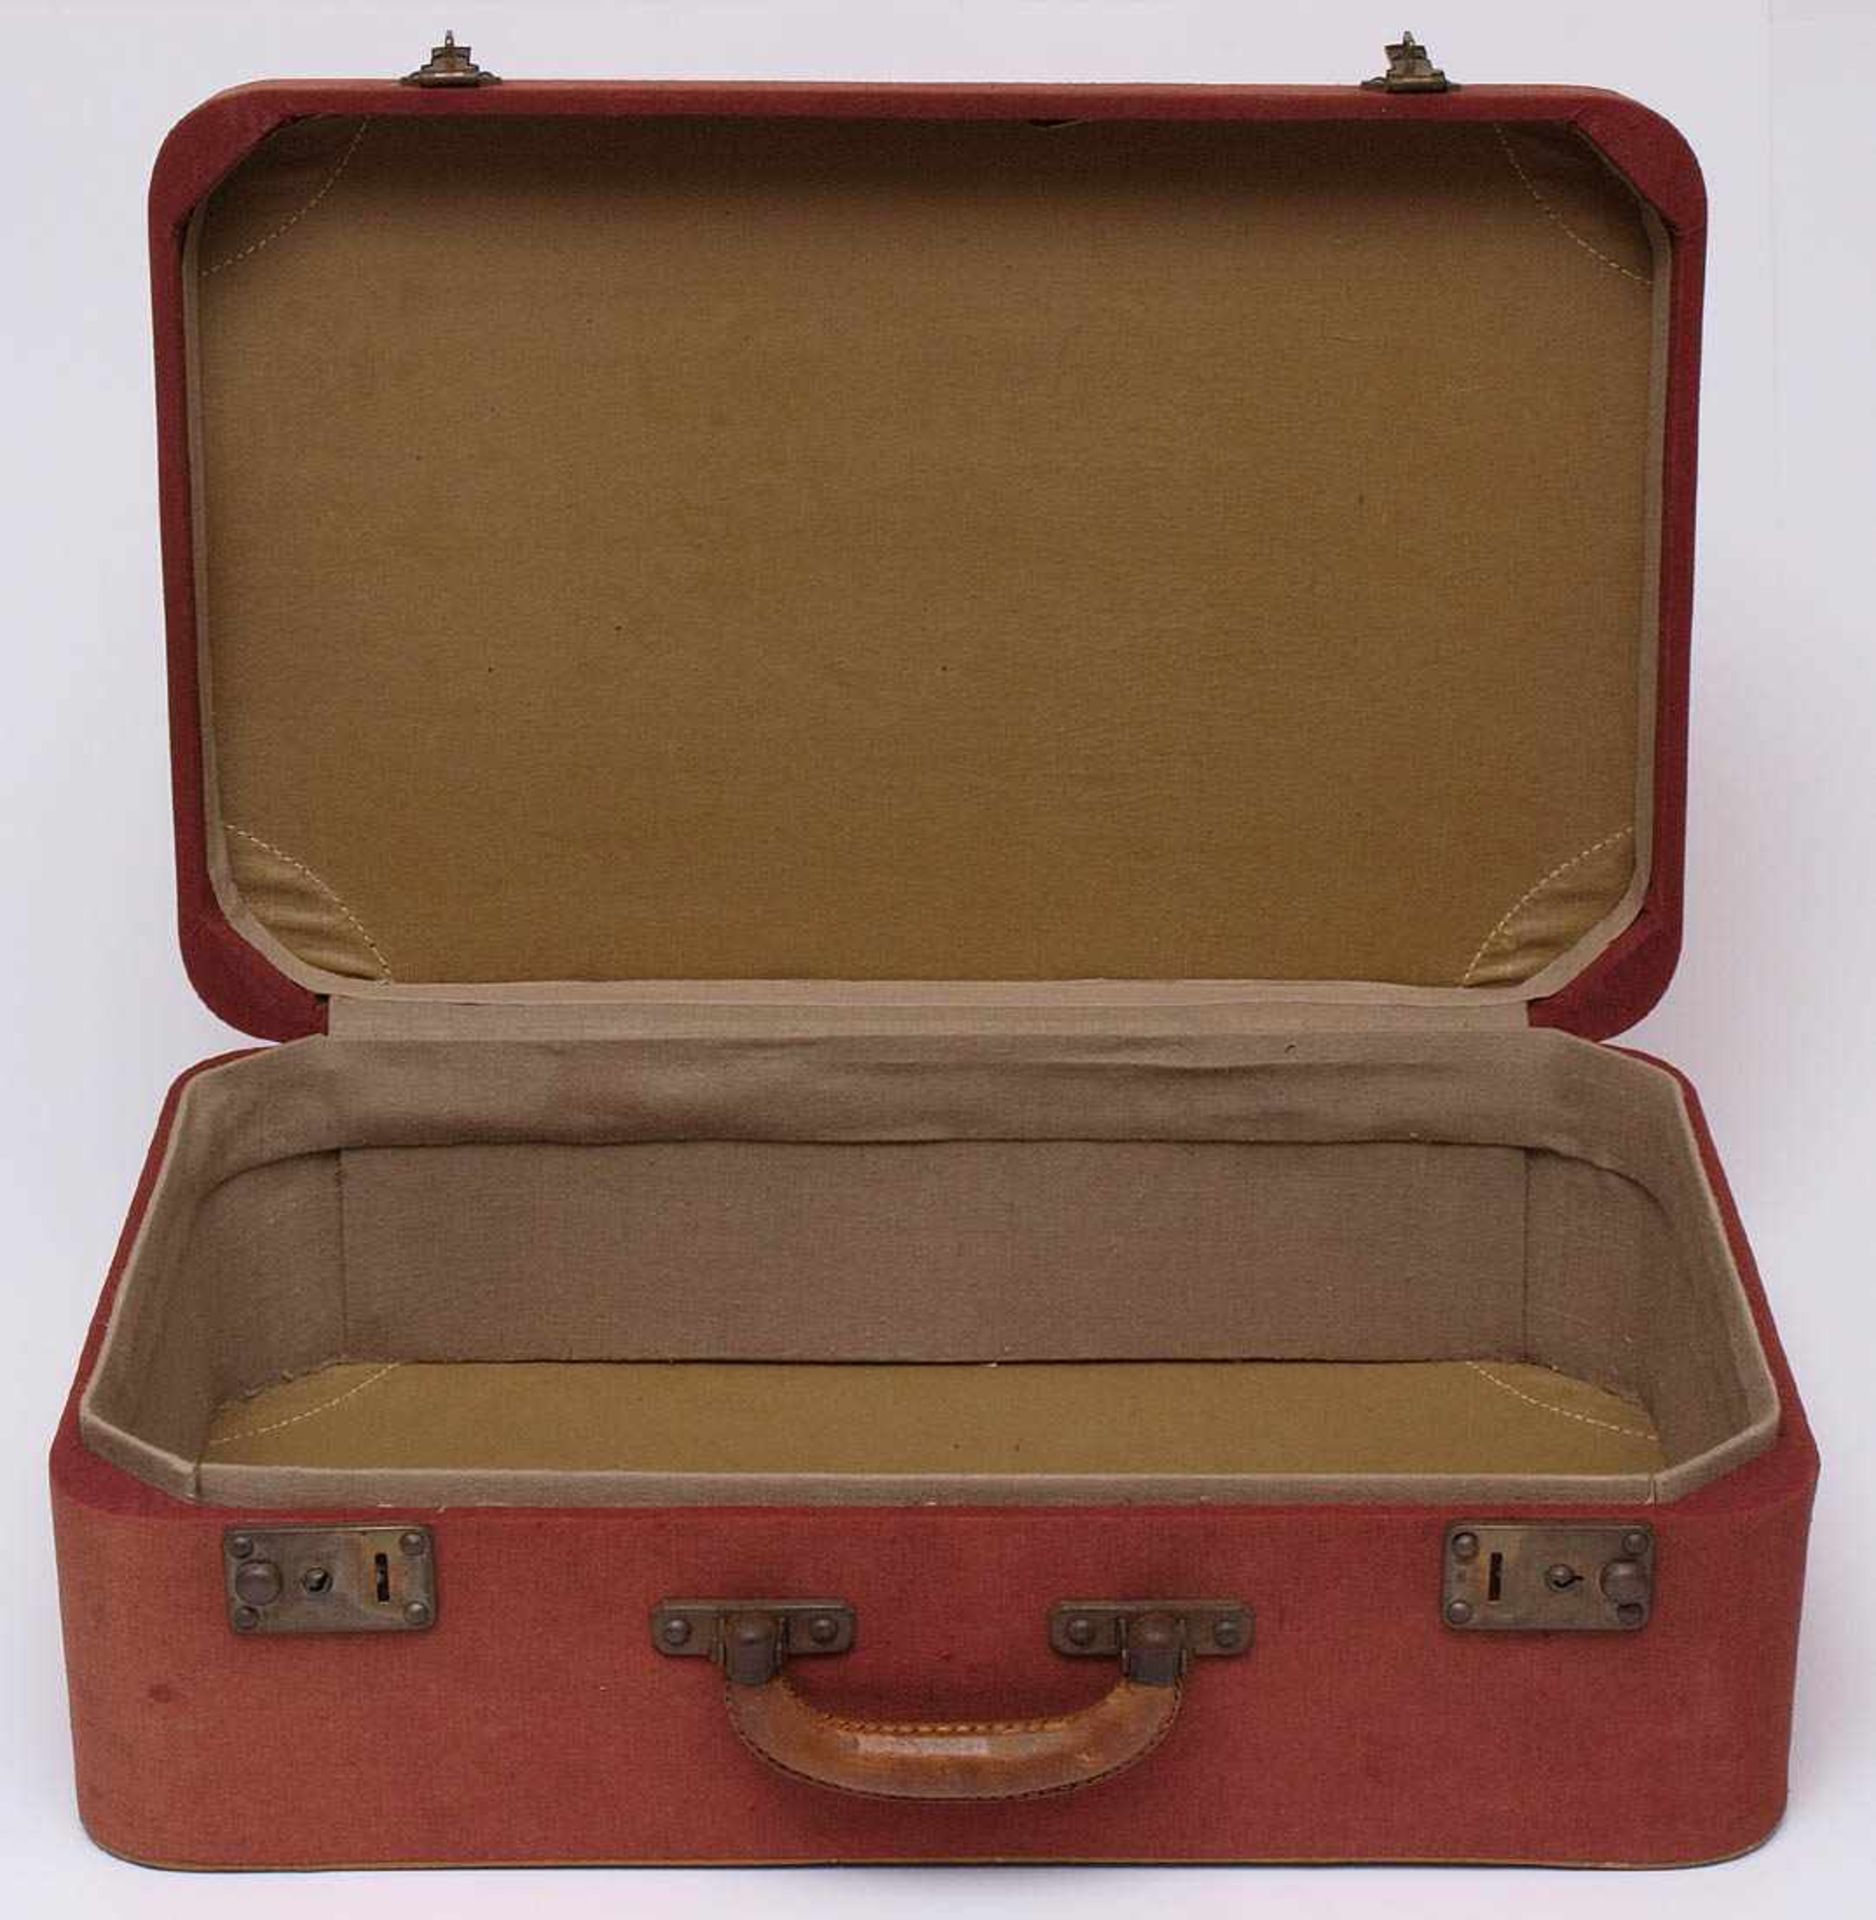 Reisekoffer, 30er Jahre Innen und außen mit Leinen bezogen. Ecken und Griff aus Leder. 16x48,5x30, - Bild 2 aus 2